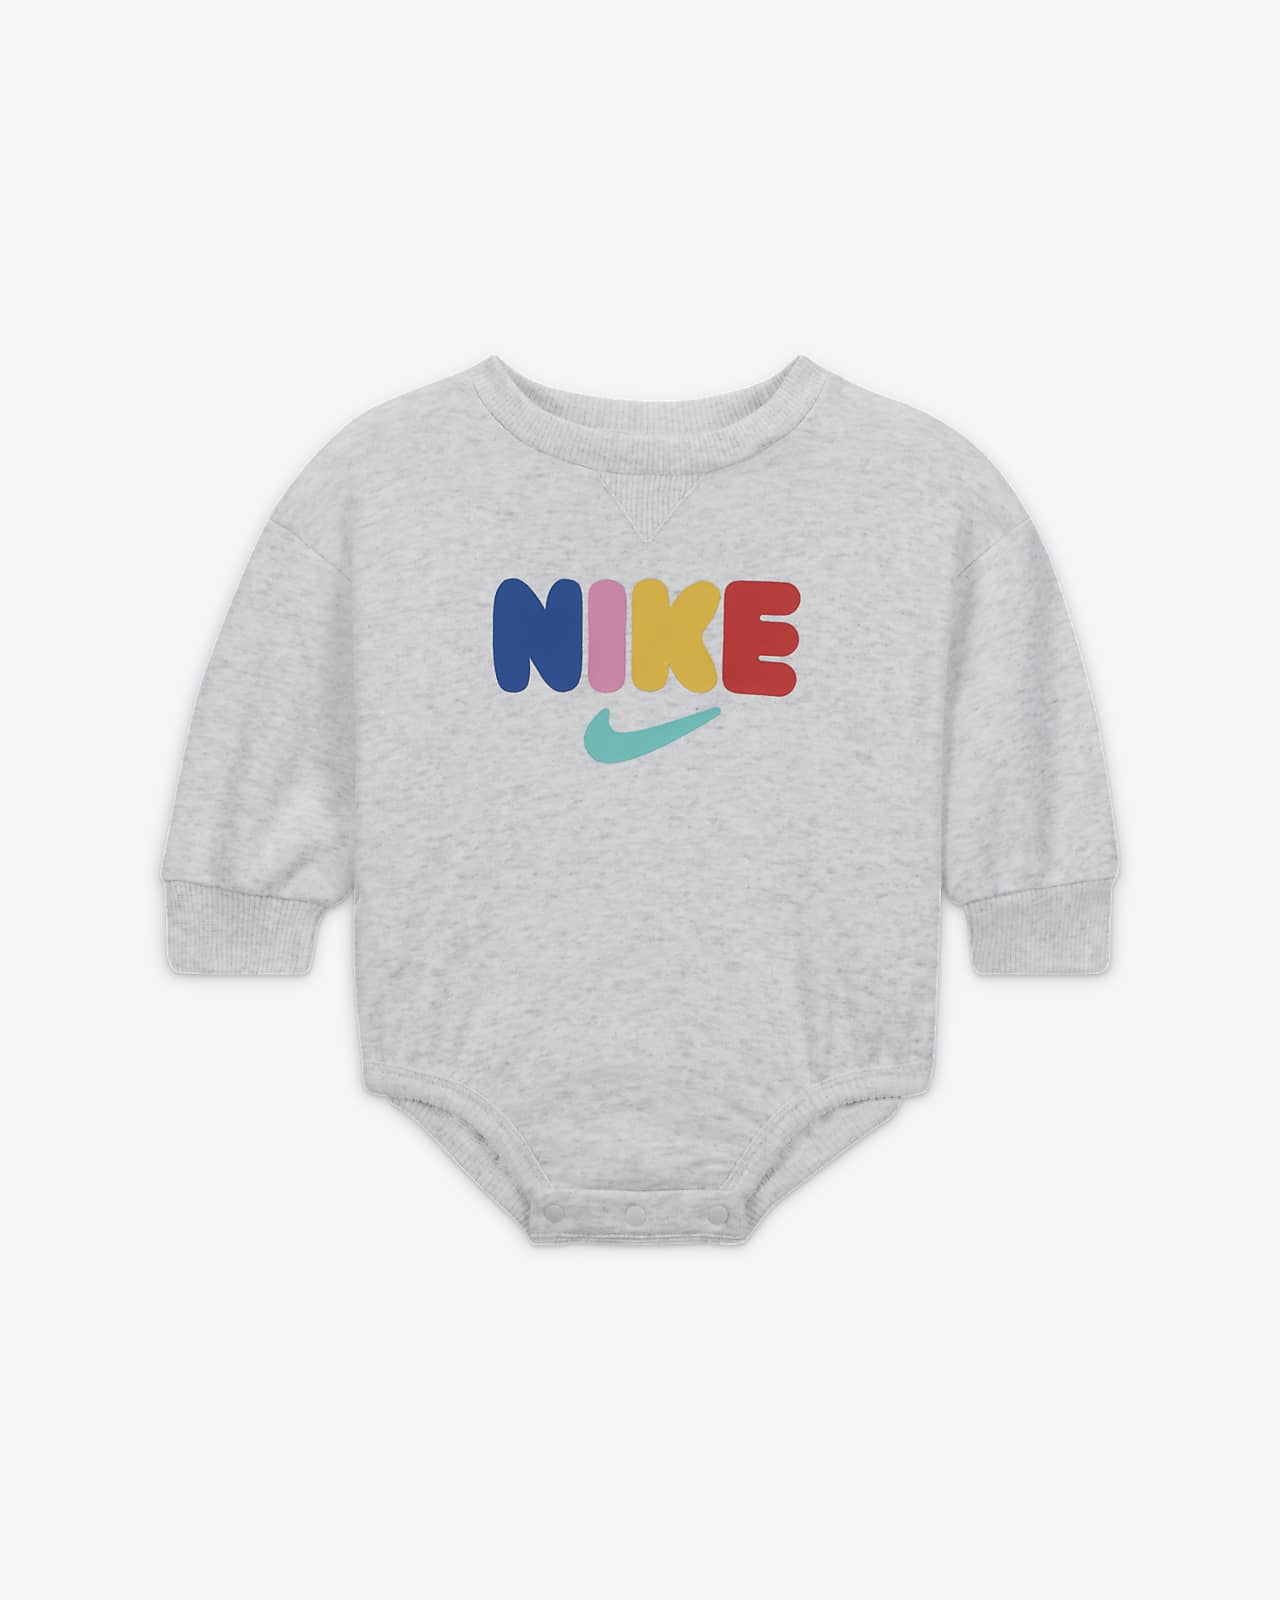 saai incompleet vastleggen Nike Sportswear Primary Play Crew Romper Baby Romper. Nike.com